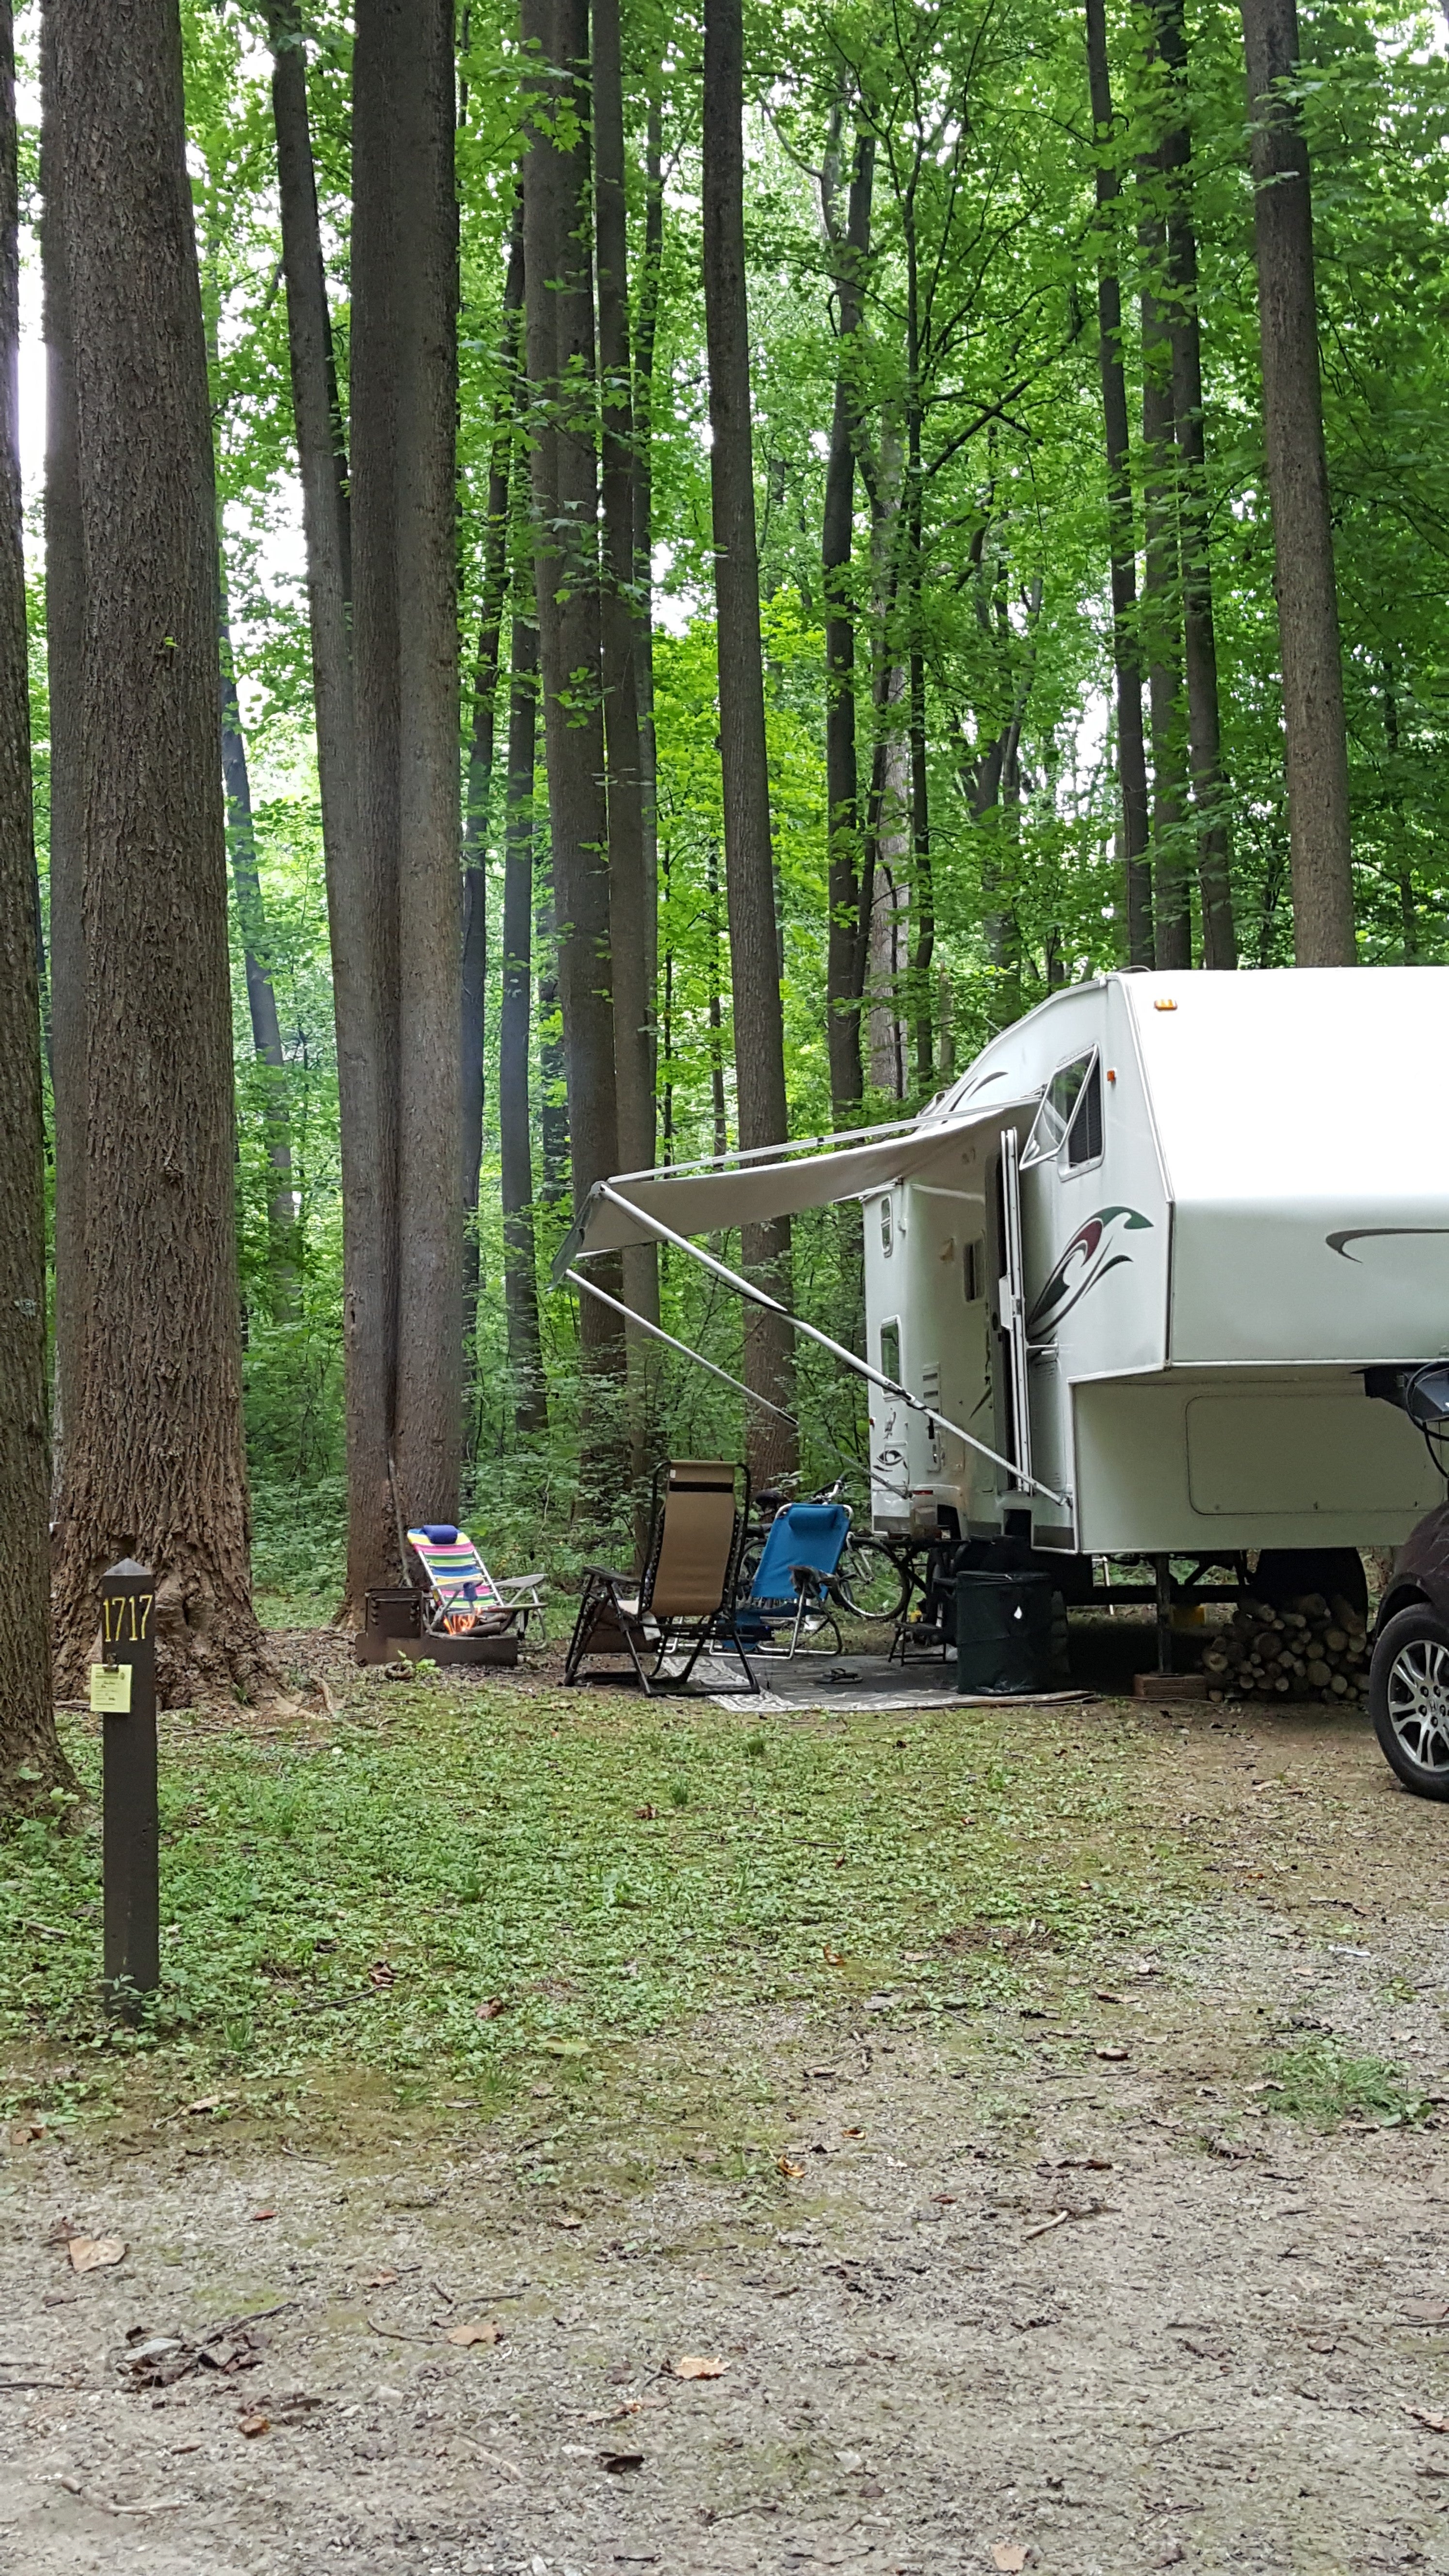 Our camper in site #17.